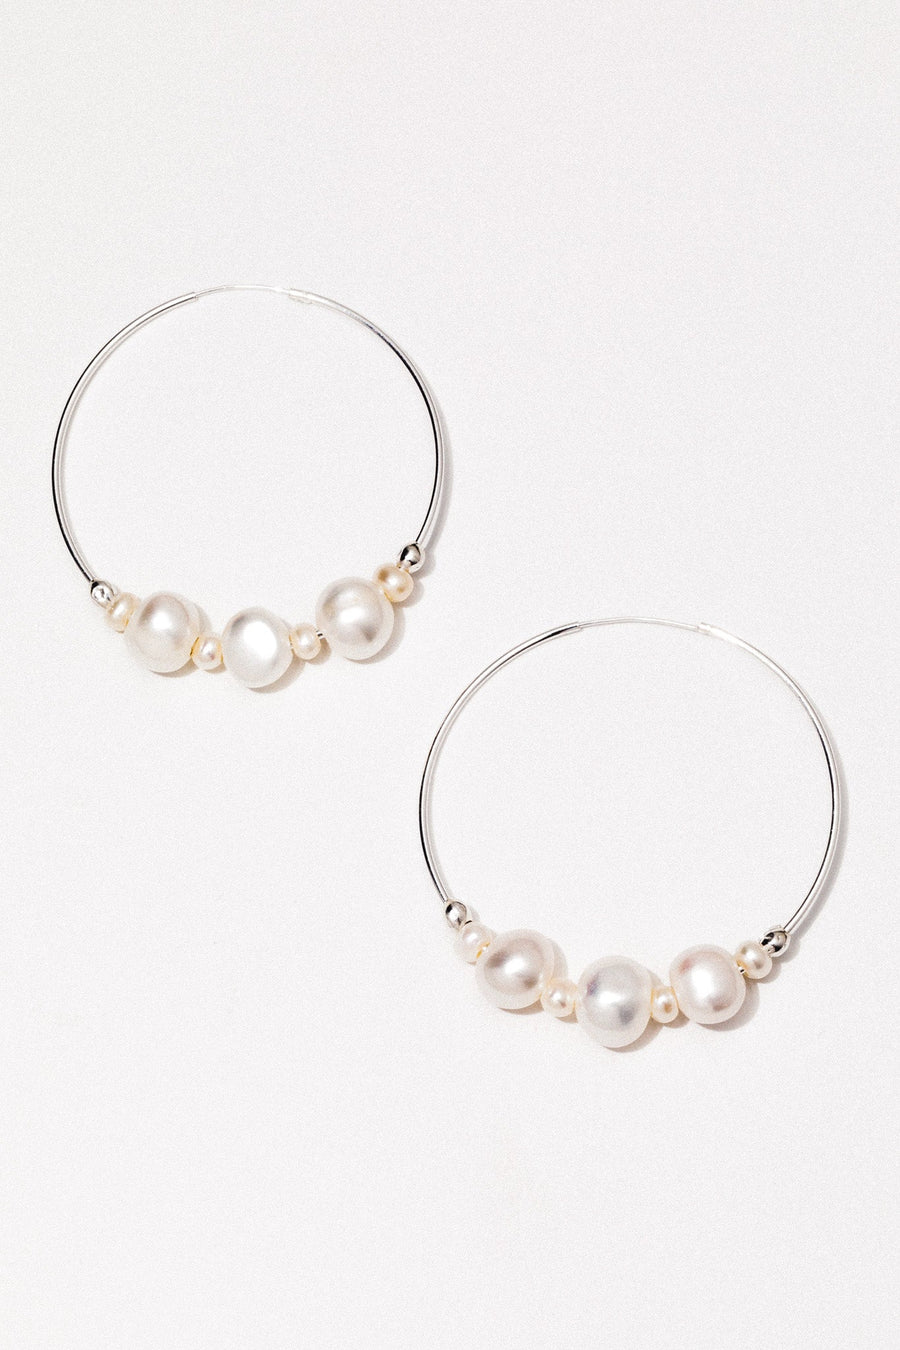 CGM Jewelry Silver Tefnut Pearl Earrings .:. Silver